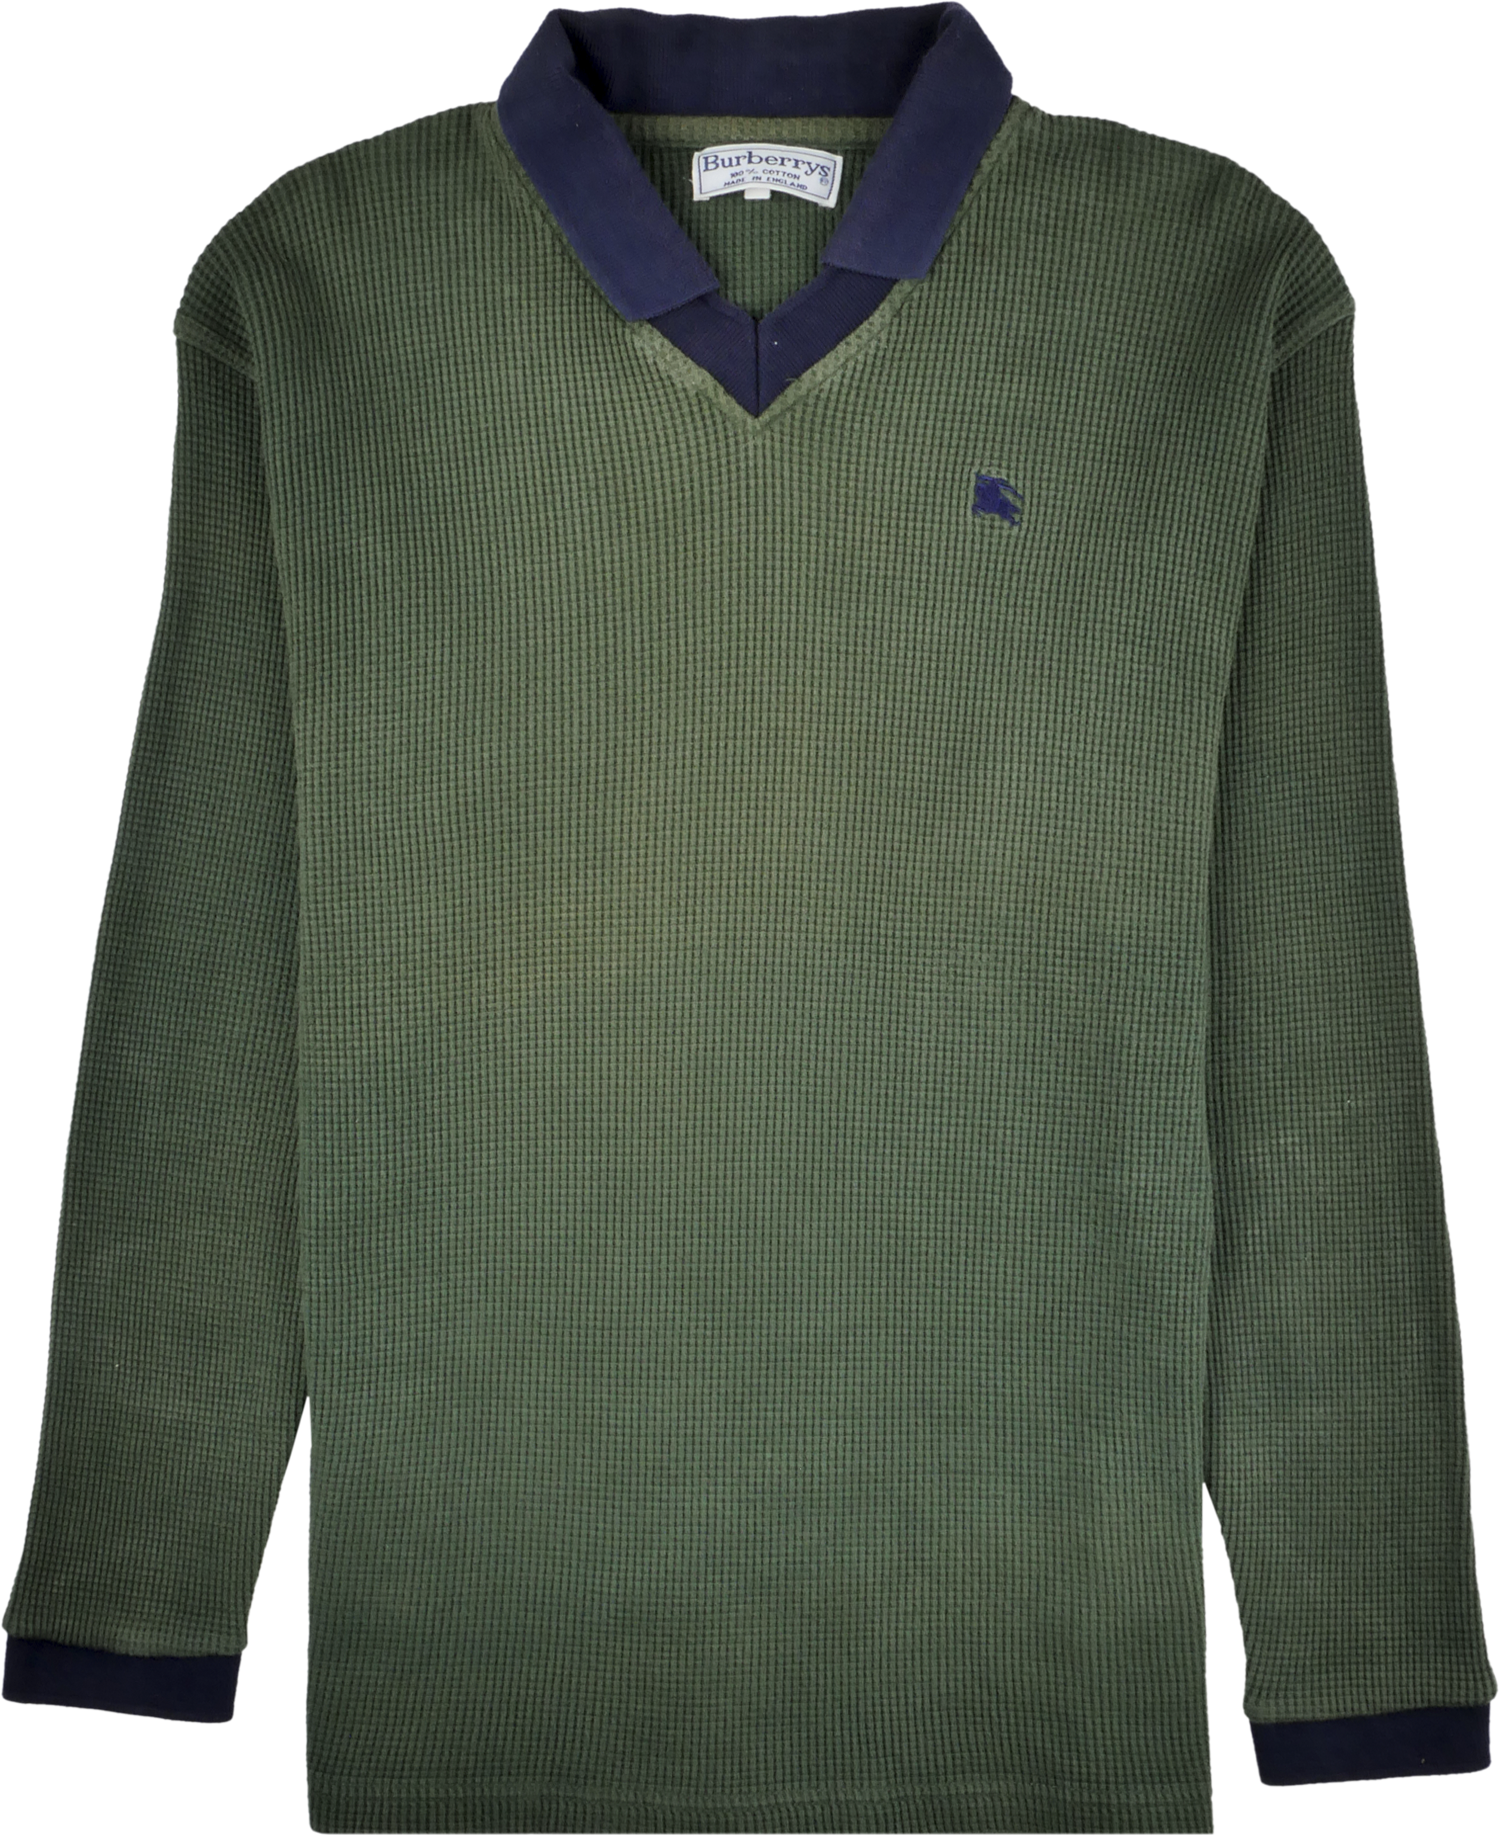 Burberry Polo Shirt grün